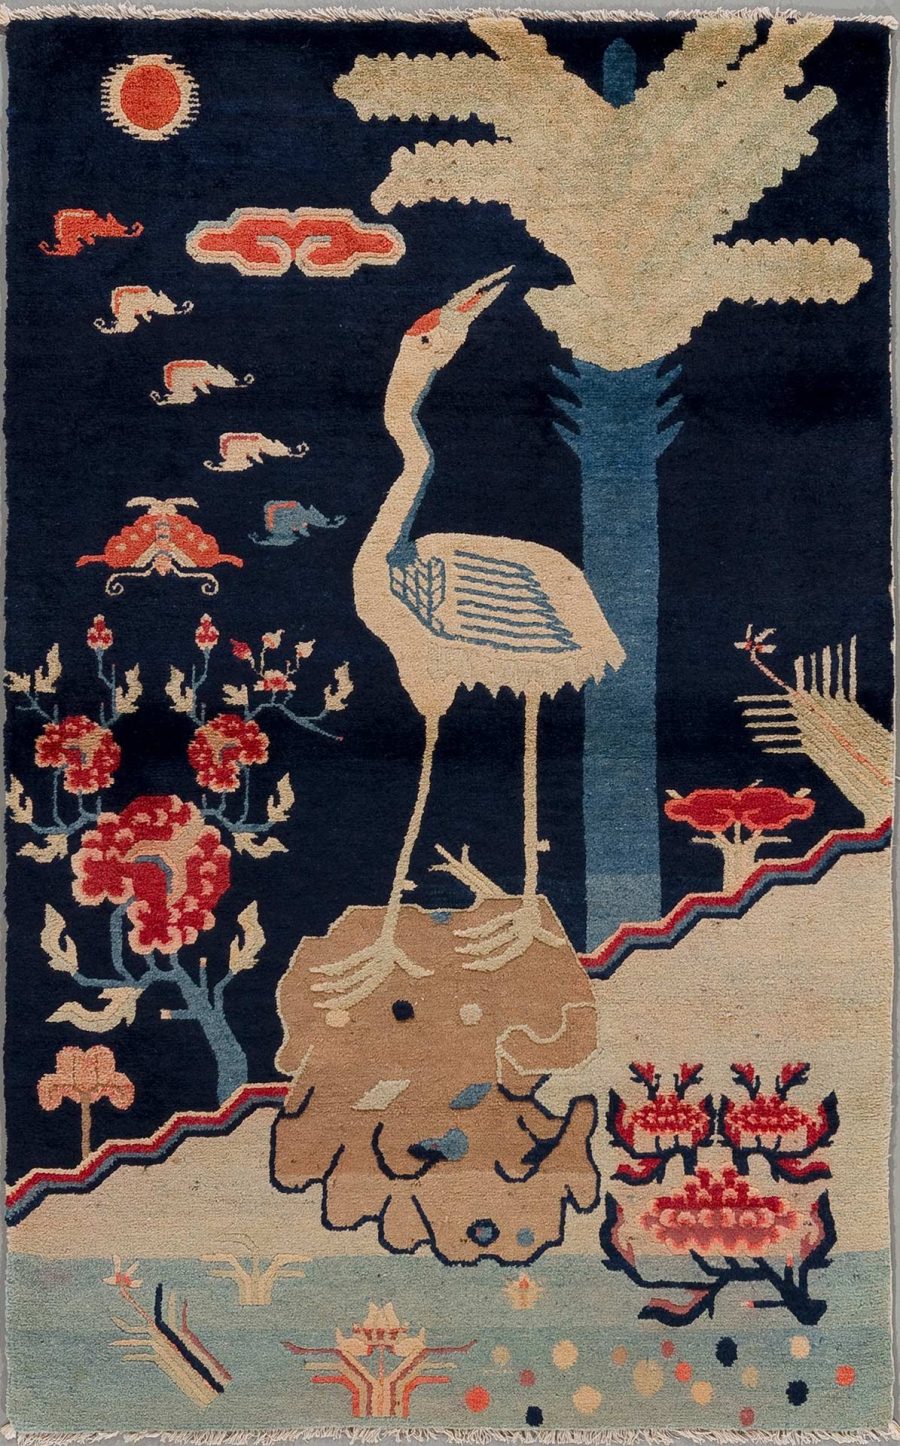 Handgewebter Teppich mit folkloristischem Muster, darstellend einen Storch unter einem Baum, umgeben von Wolken, Sonne, laufenden Elefanten und Blumen. Farben sind hauptsächlich Dunkelblau, Beige und Rottöne.